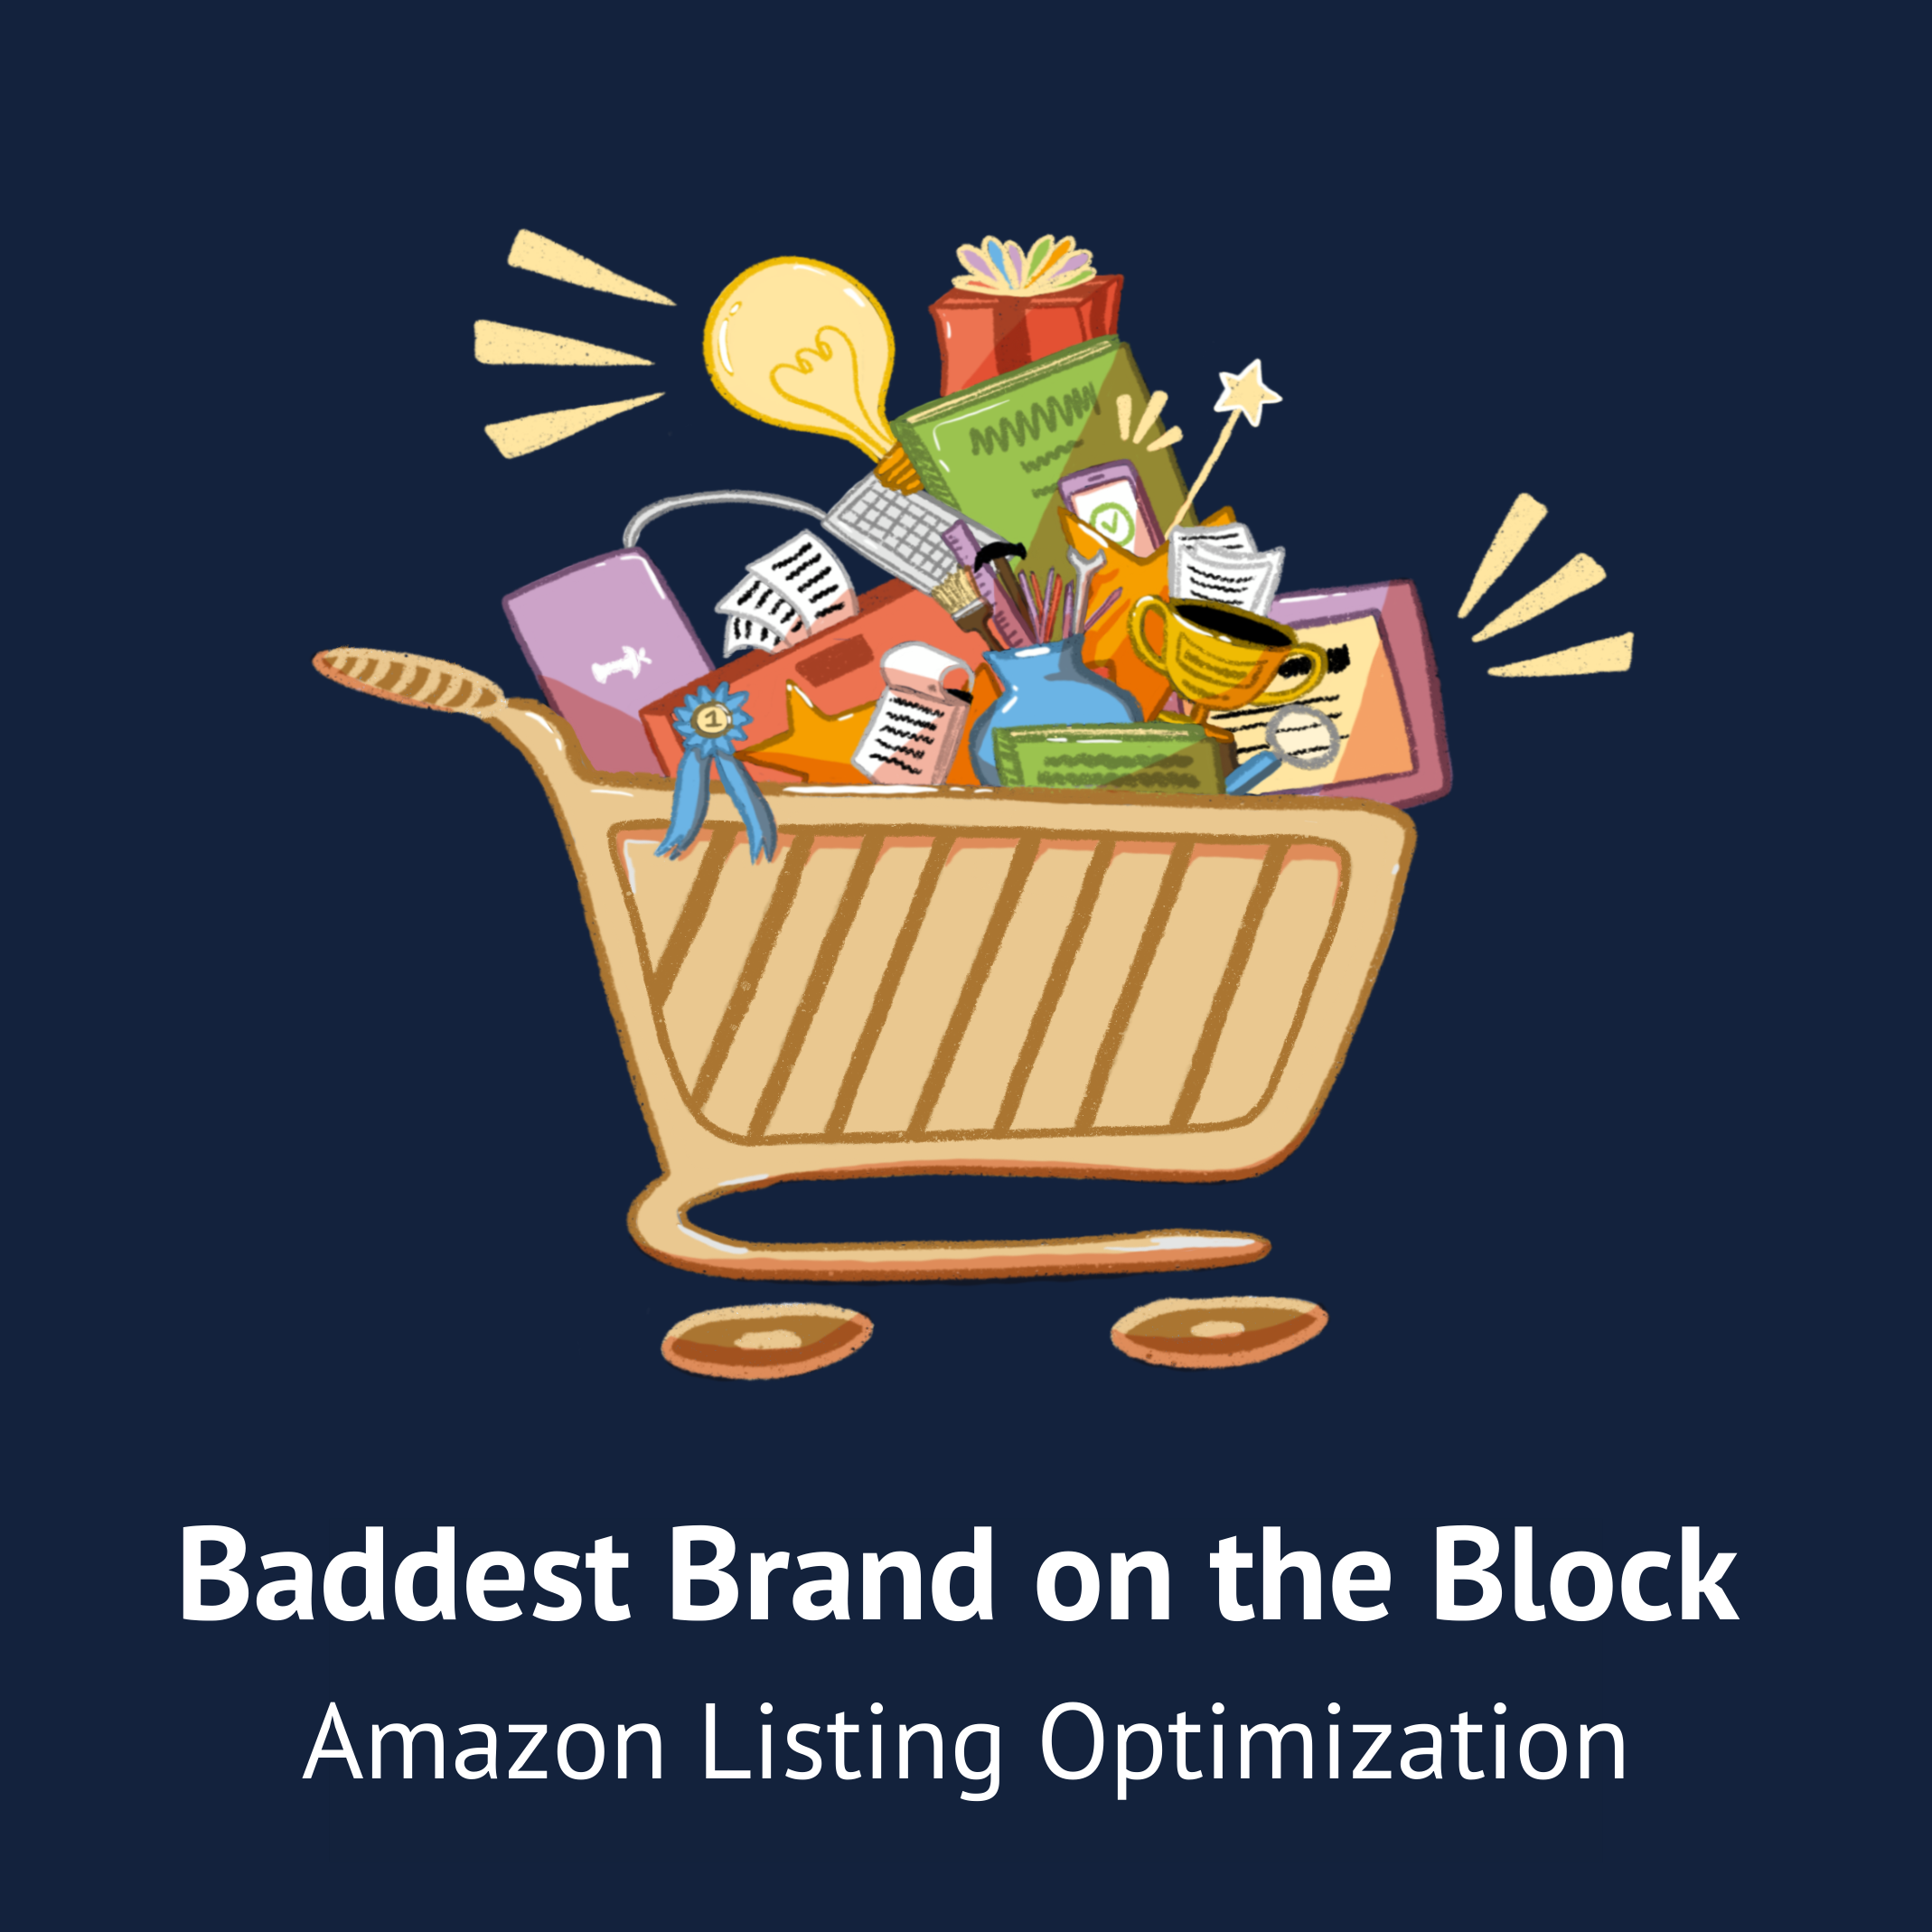 B2B service Amazon Listing Optimization by Marketing by Emma's Emmazon